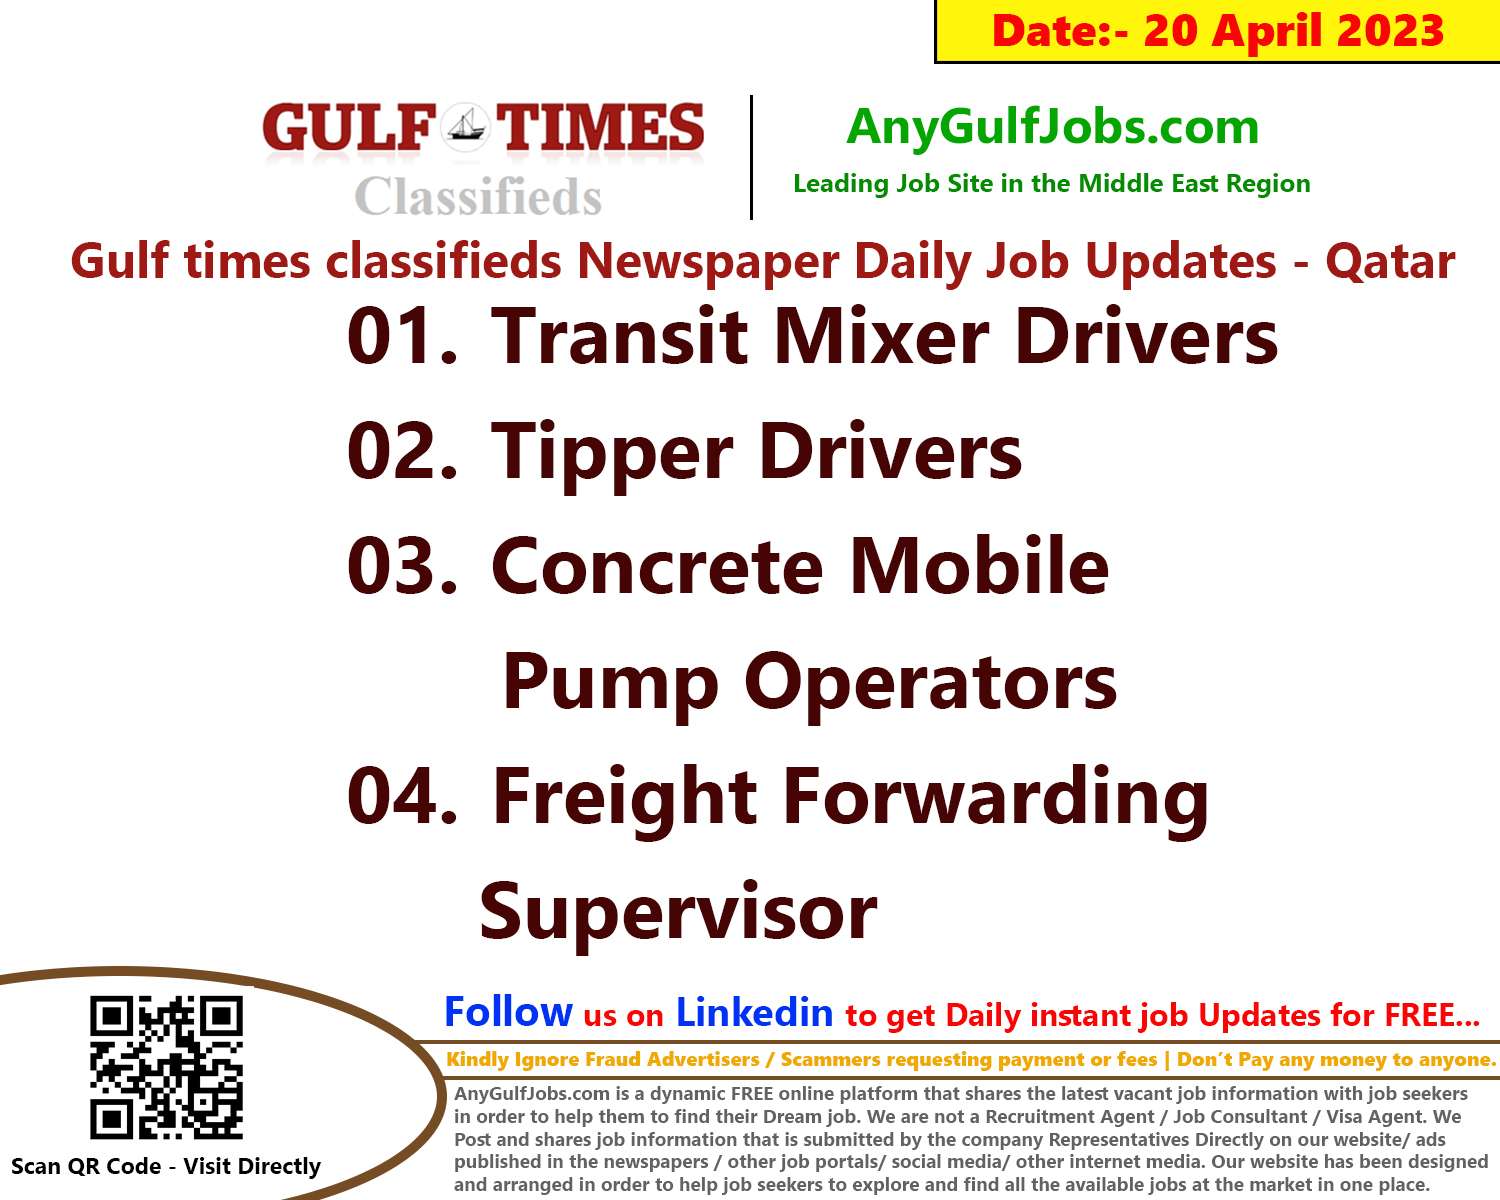 Gulf times classifieds Job Vacancies Qatar - 20 April 2023